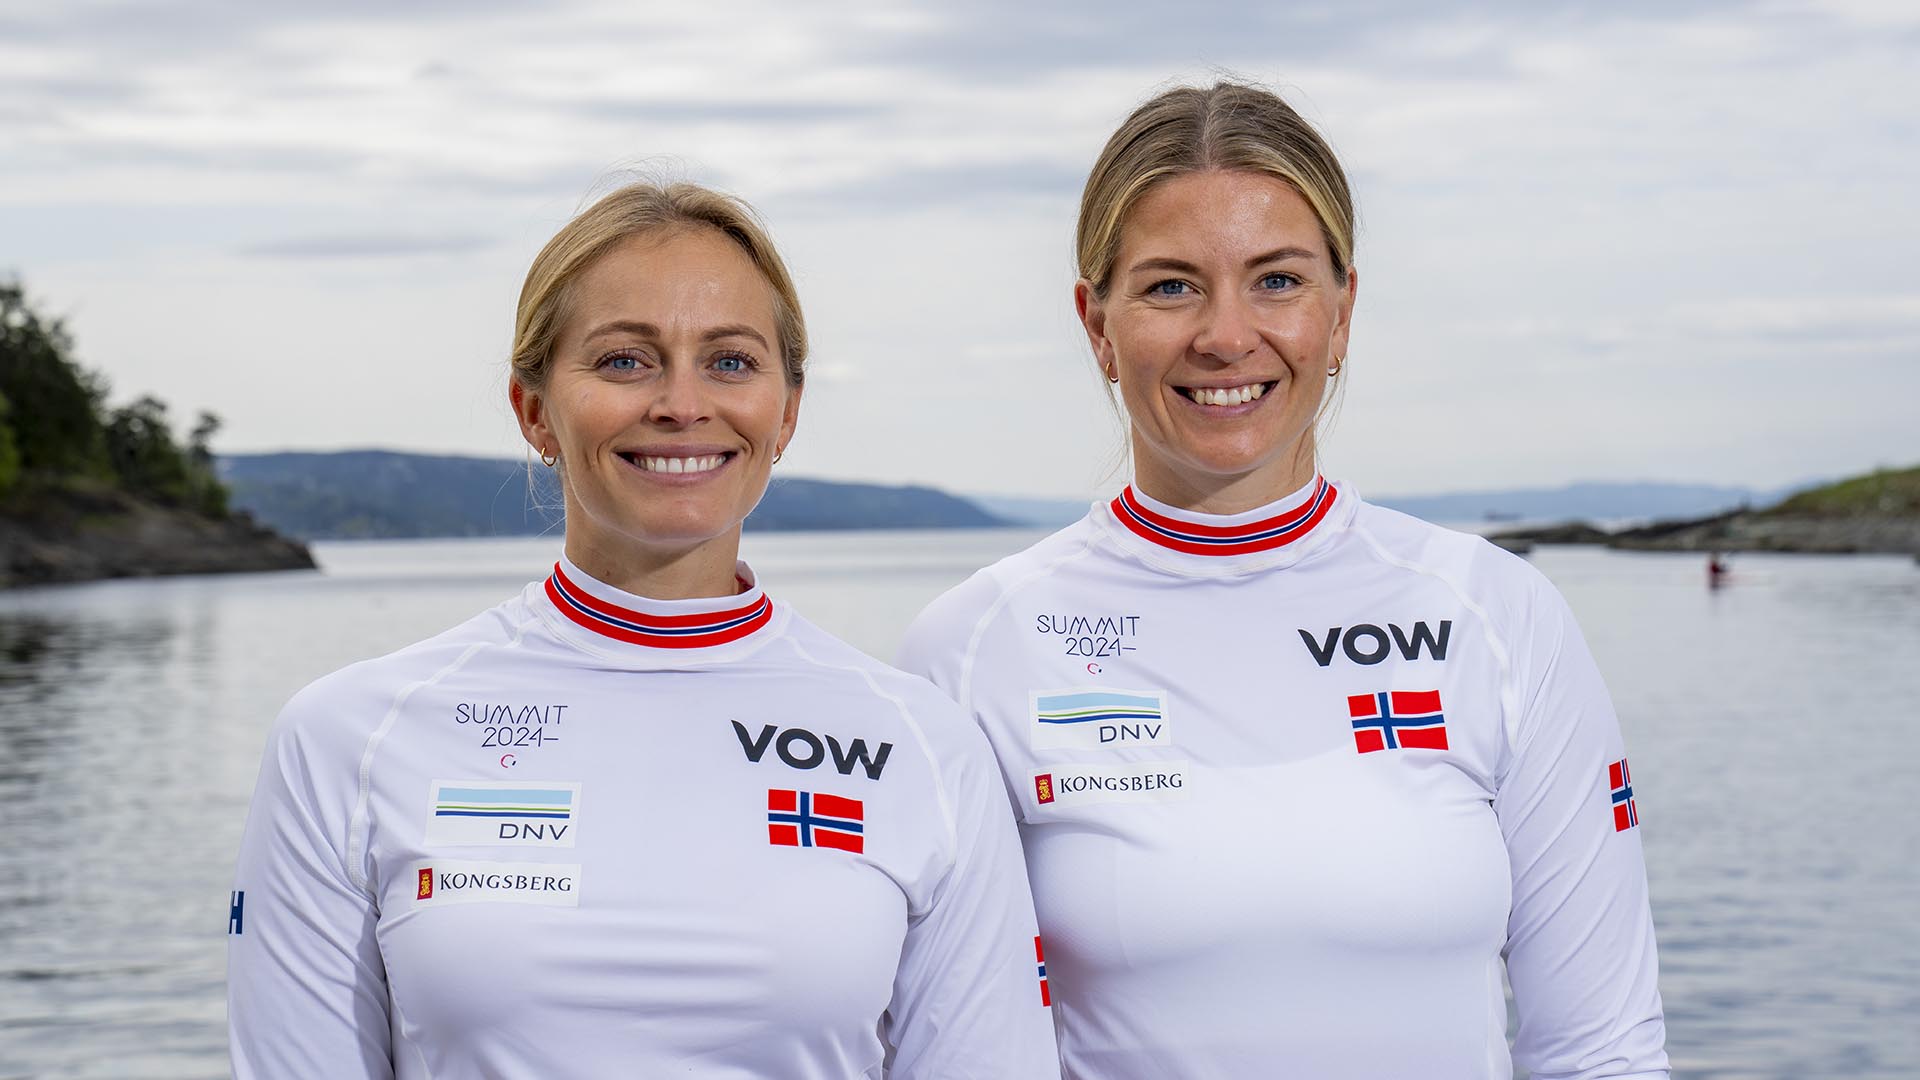 Vestfold og Telemark med mange utøvere under OL og Paralympics